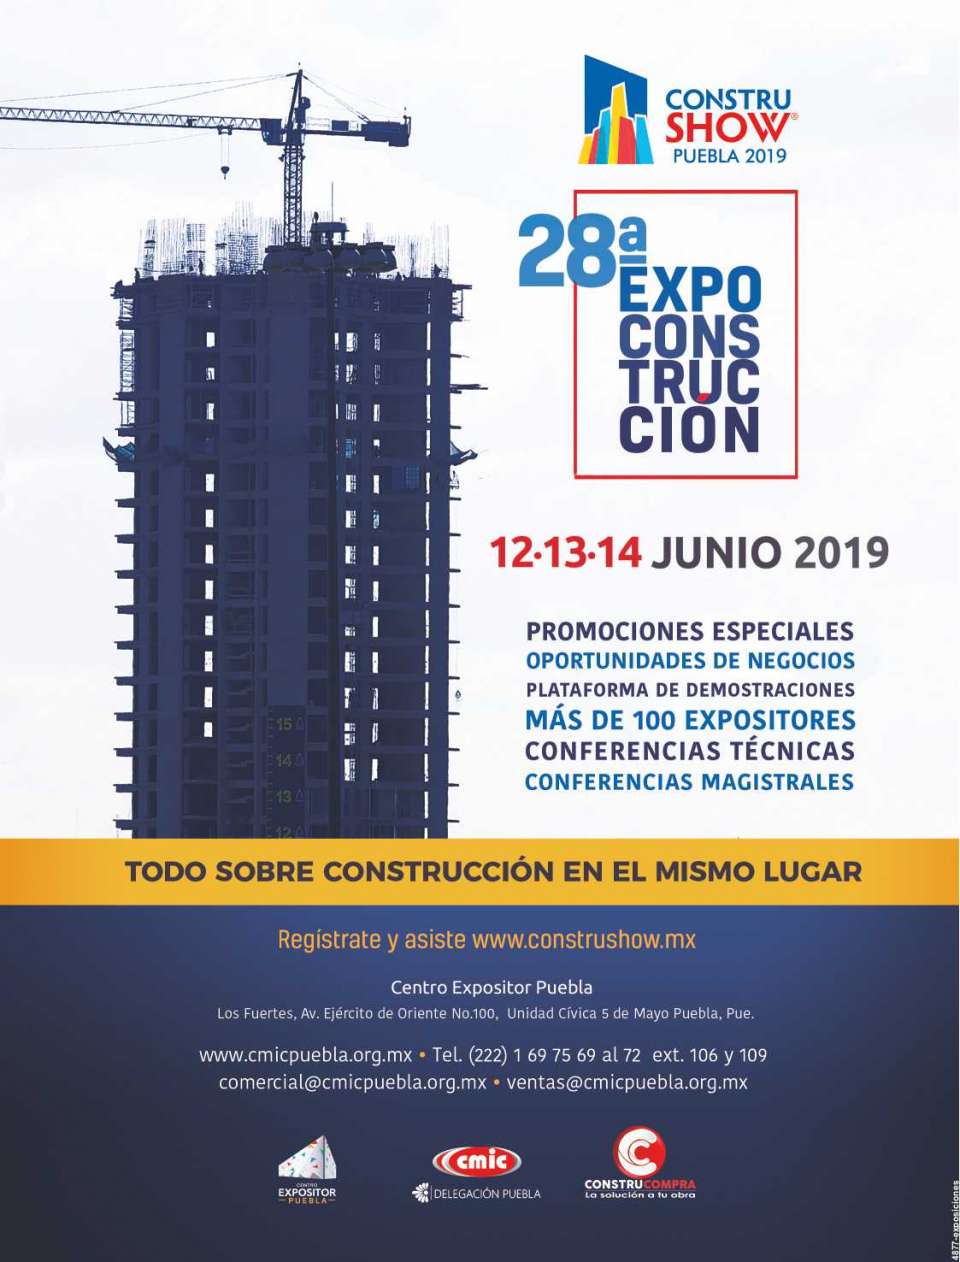 28a. EXPO CONSTRUCCION Constru-Show.
La Expo más grande del Sureste.
Centro Expositor Los Fuertes en Puebla. 
-
Próximo evento 12 al 14 de Junio 2019.